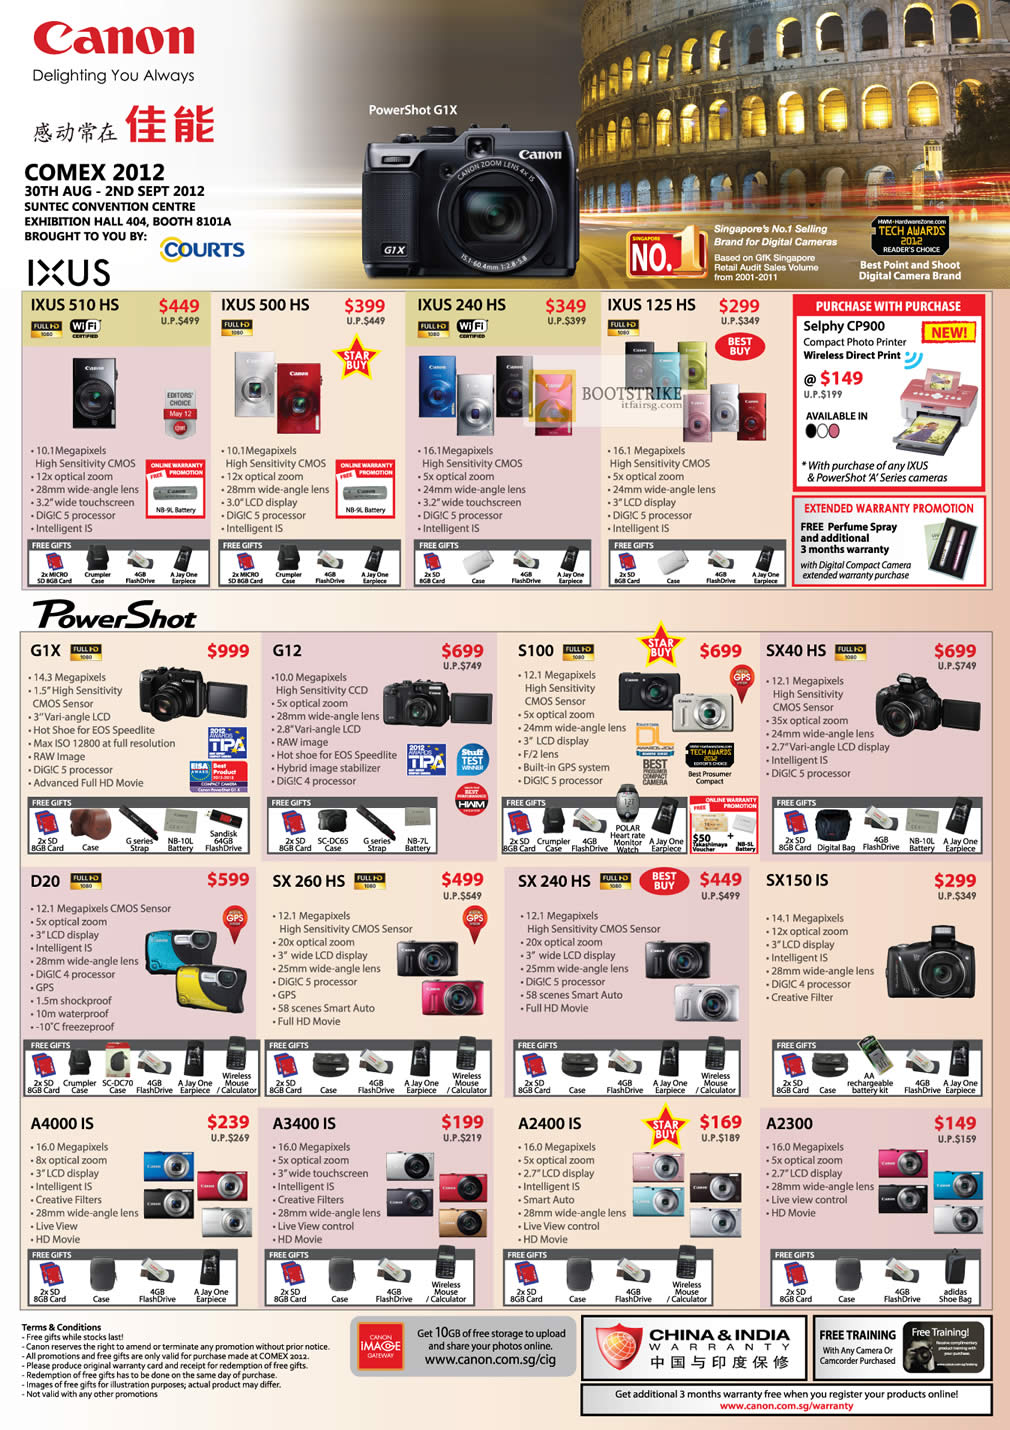 COMEX 2012 price list image brochure of Canon Digital Cameras Ixus 510 HS 500 HS 240 HS 125 HS, PowerShot G1X G12 S100 SX40 HS D20 SX 240 260 SX150 IS, A4000 IS A3400 A2400 A2300